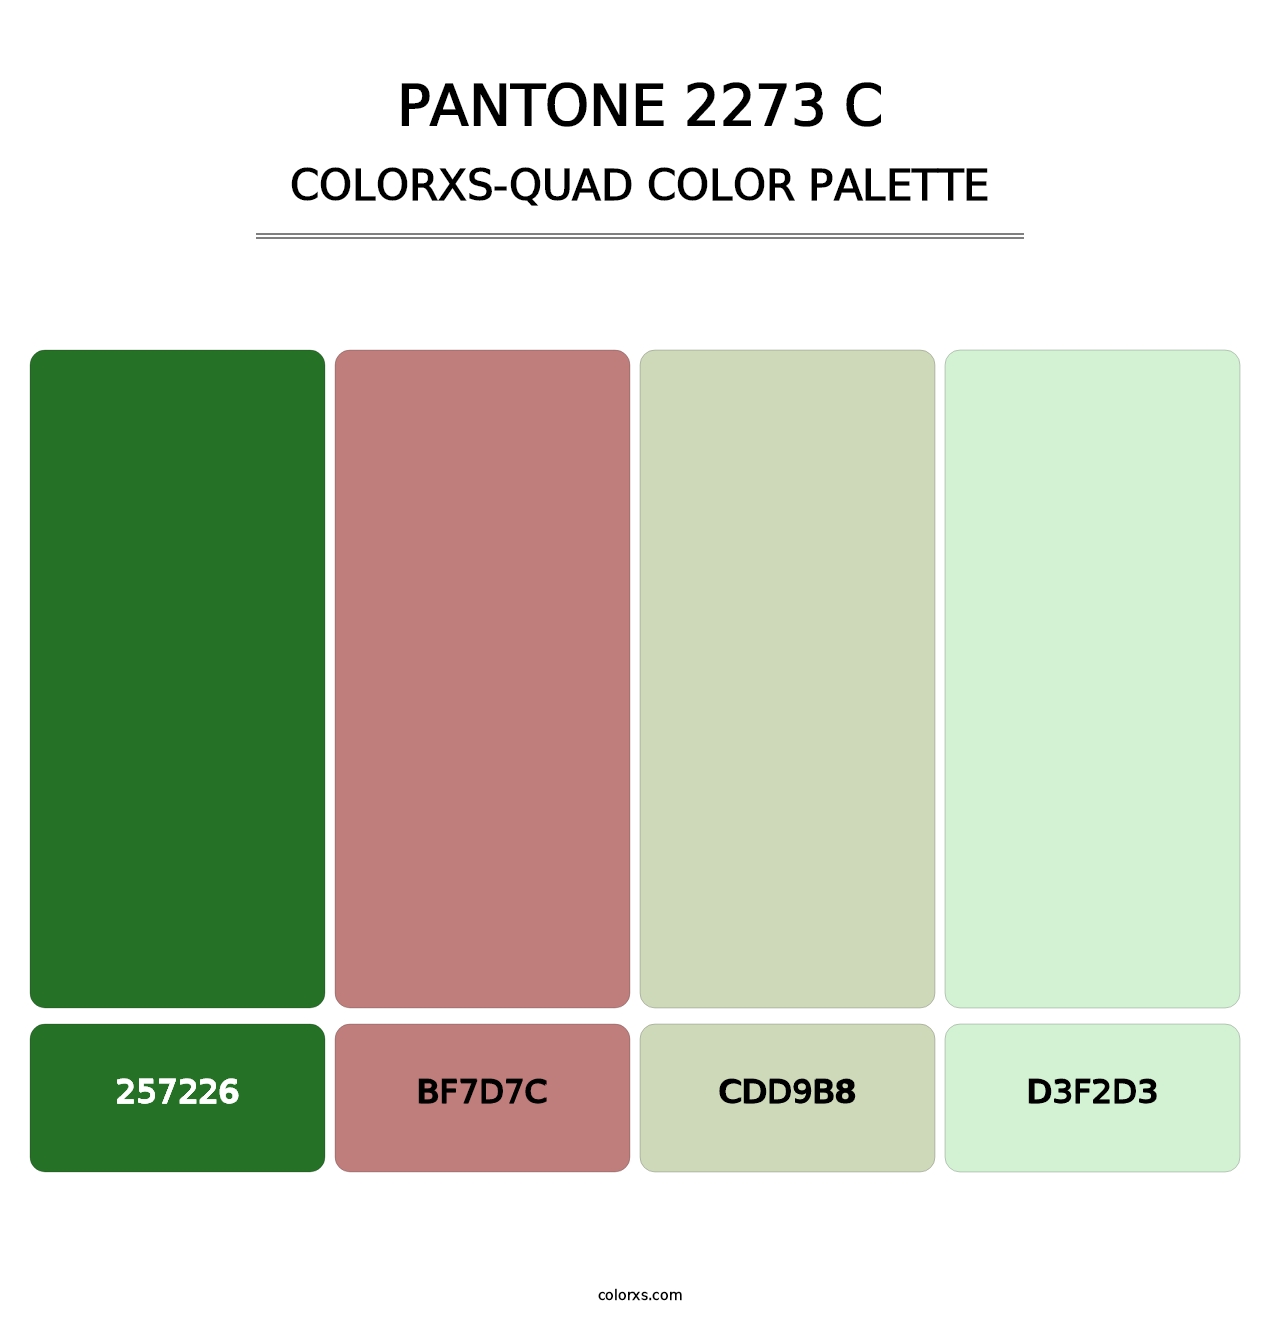 PANTONE 2273 C - Colorxs Quad Palette